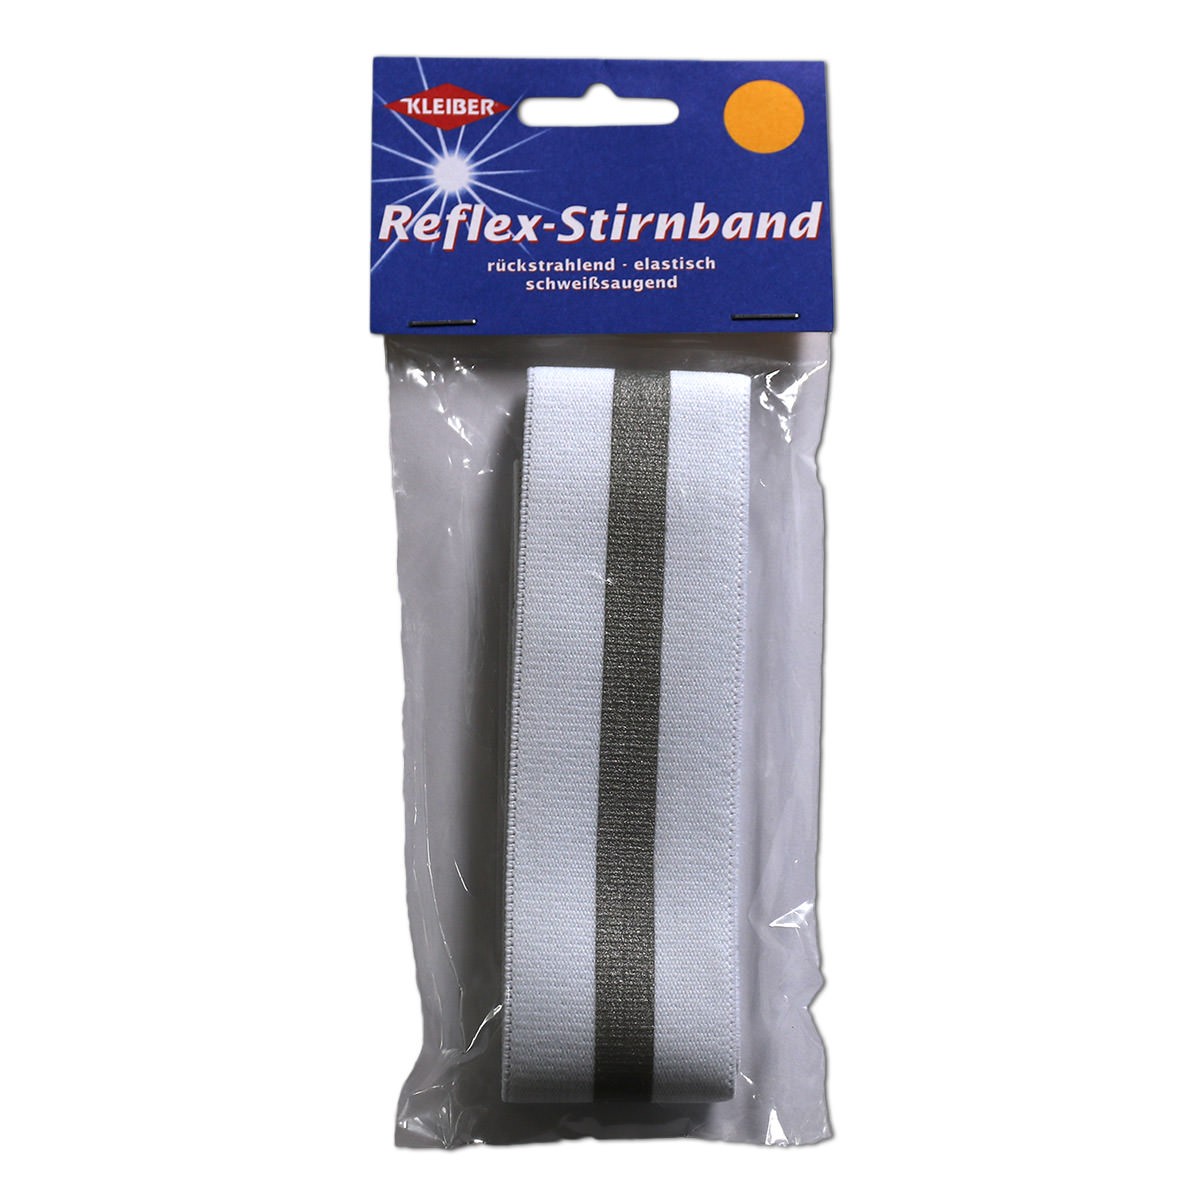 Sitrnband mit Reflektorstreifen - Reflex-Stirnband